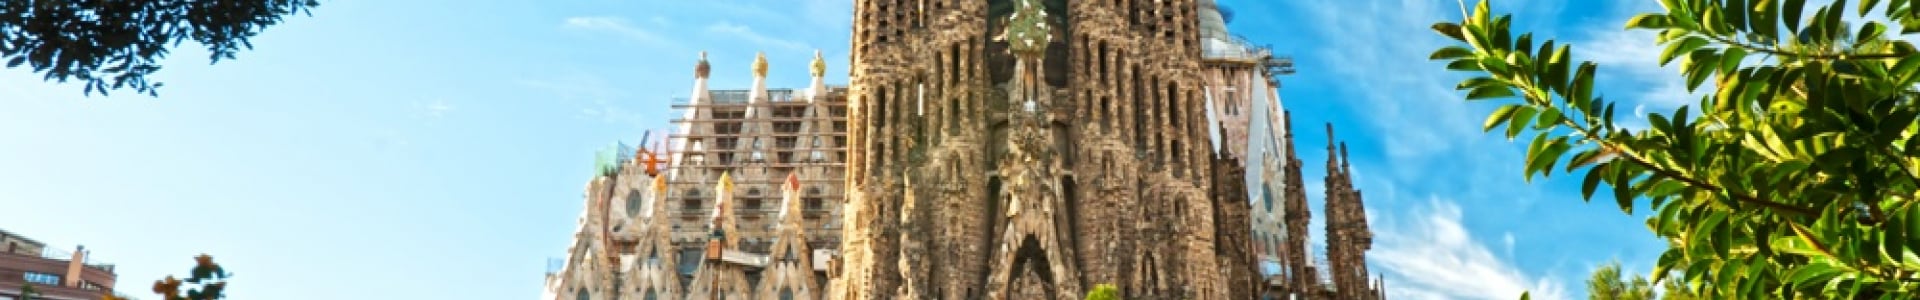 Voyage Privé : week-ends Espagne, 3j/2n en hôtels luxe, - 70% 